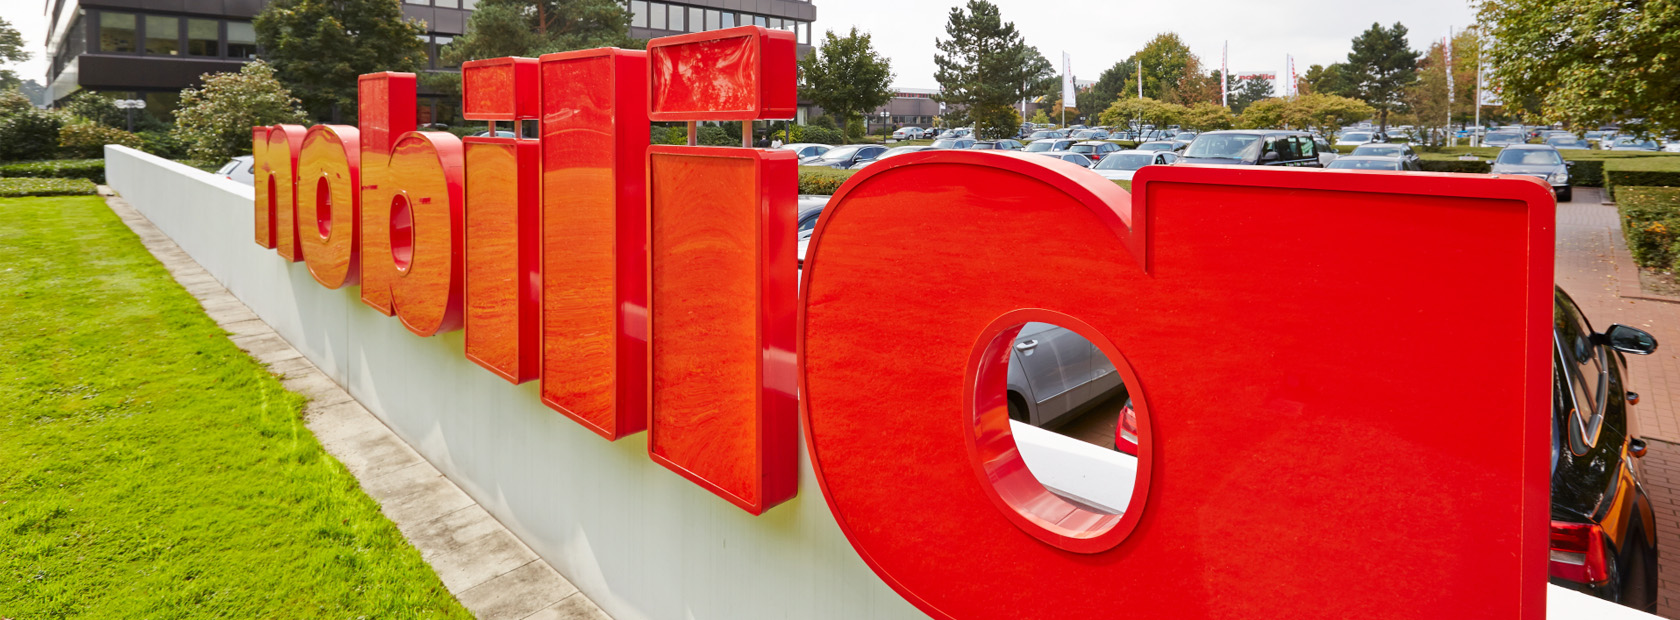 Des panneaux de lettres tridimensionnelles rouges formant un mot installé à l'extérieur, avec une végétation luxuriante et un bâtiment moderne en arrière-plan.